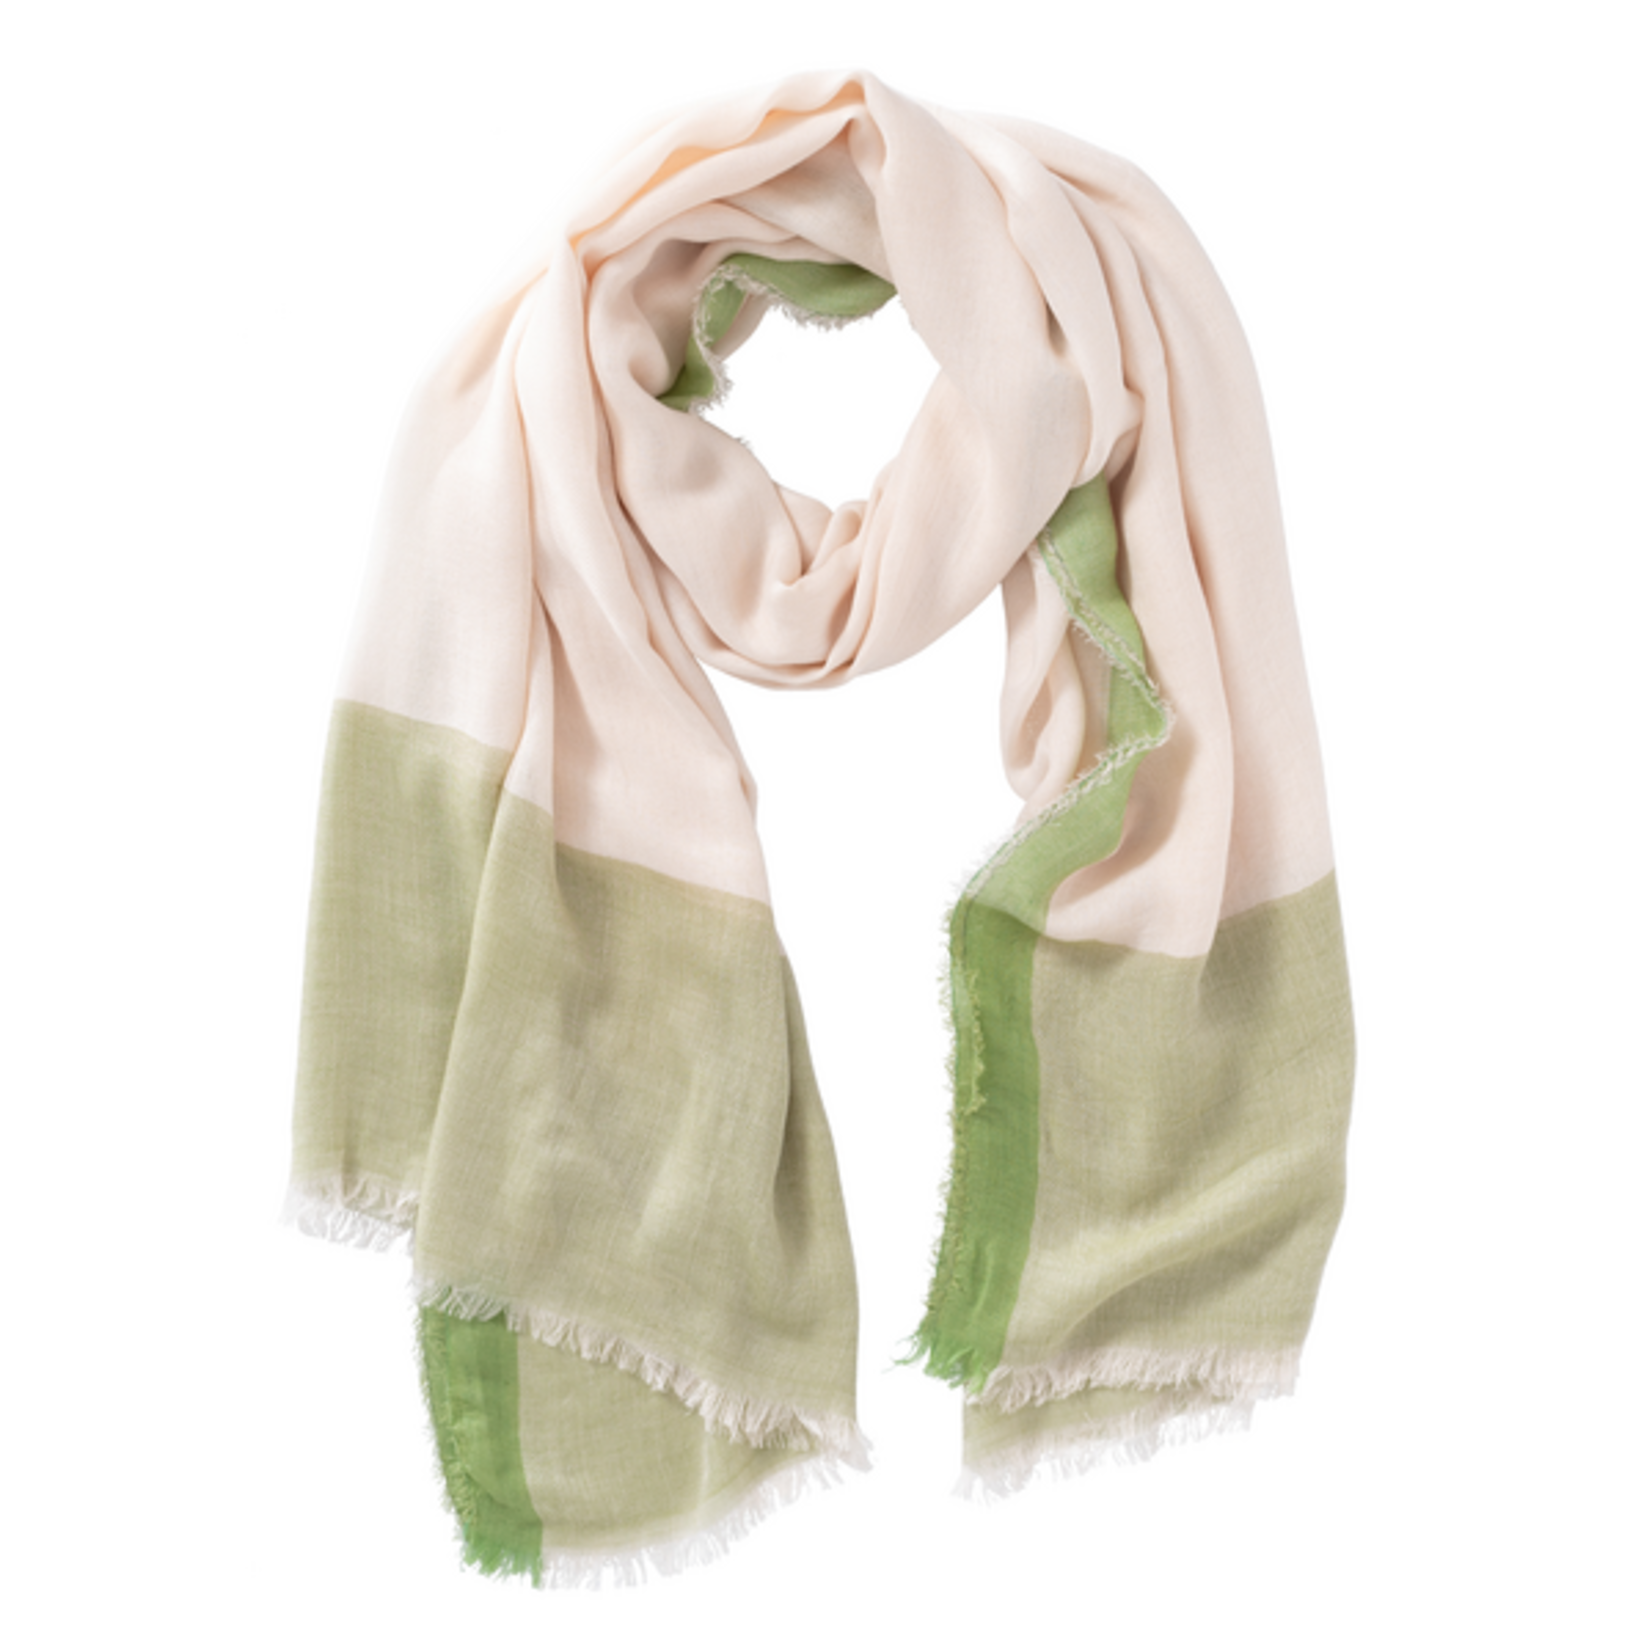 YAYA Sjaal - Sage Green Quality - De perfecte accessoire voor jouw outfit!